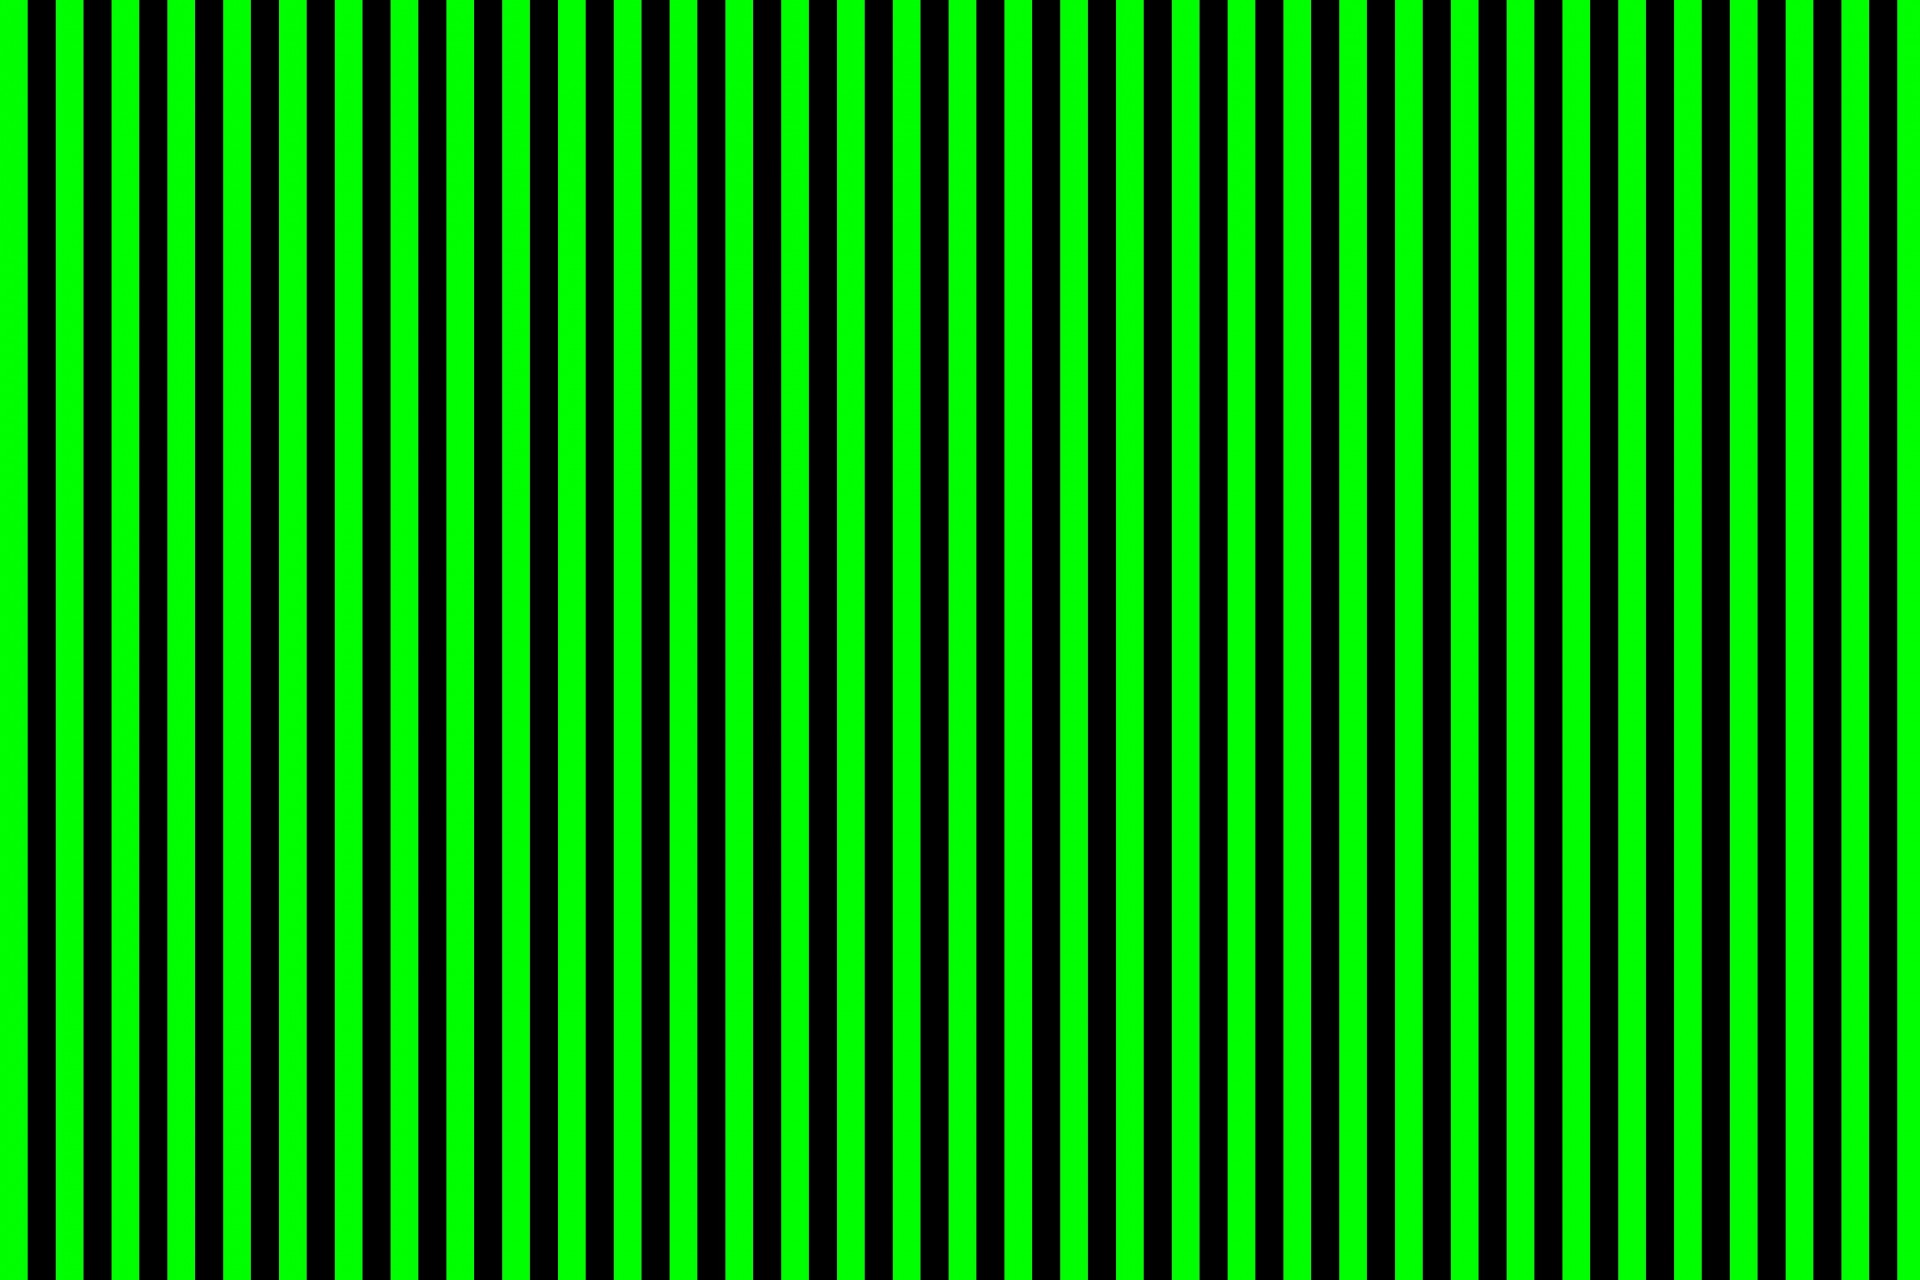 Liniile verzi și negre